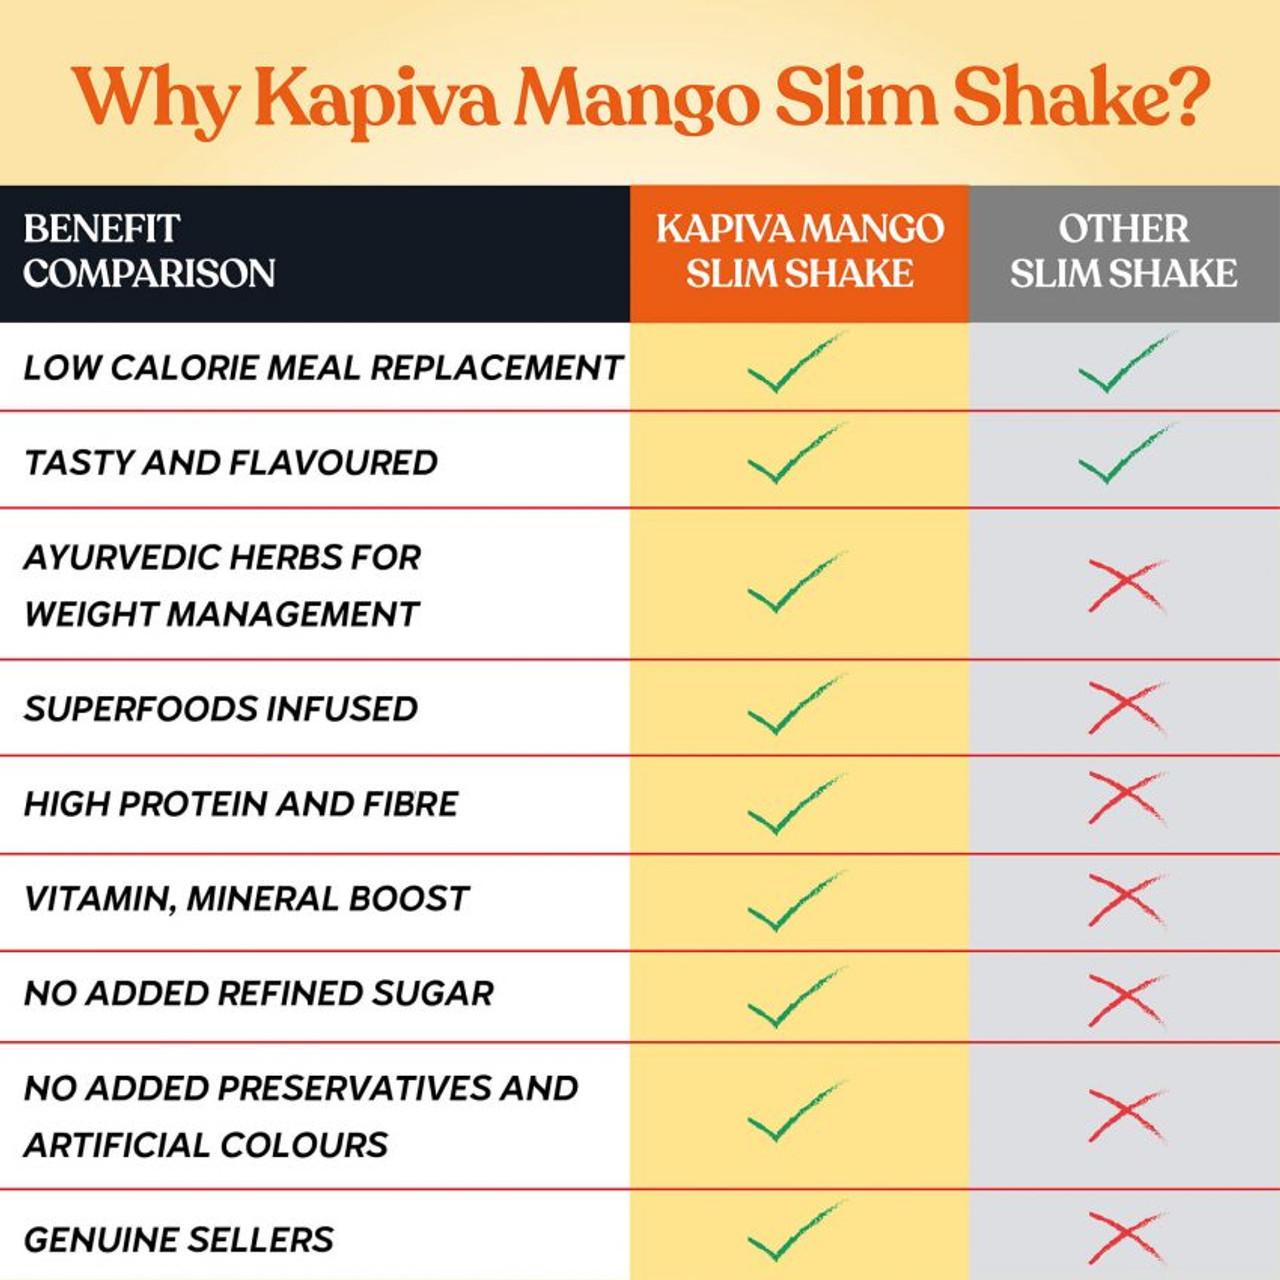 kapiva mango slim shake